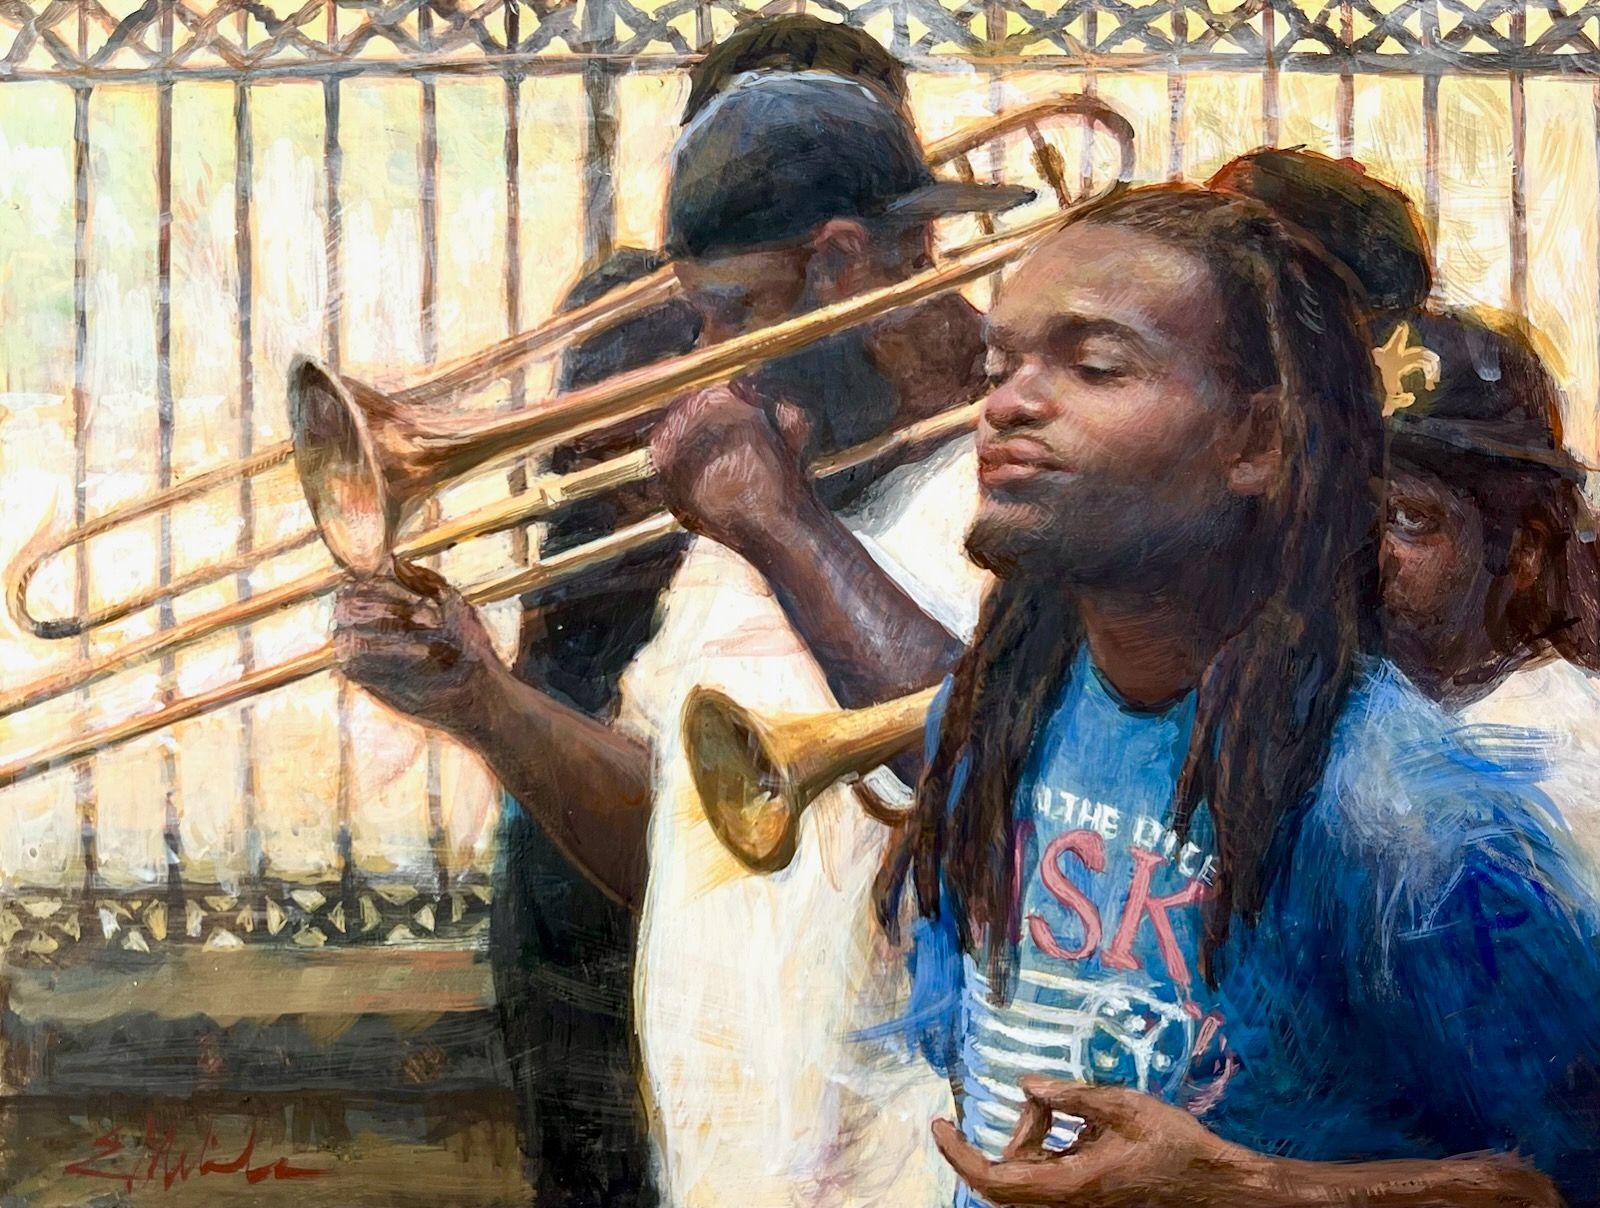 Sons de la Nouvelle-Orléans  Œuf  Tempera  9 x 12  Finaliste en portrait   Musique de jazz PSA - Painting de E. Melinda Morrison